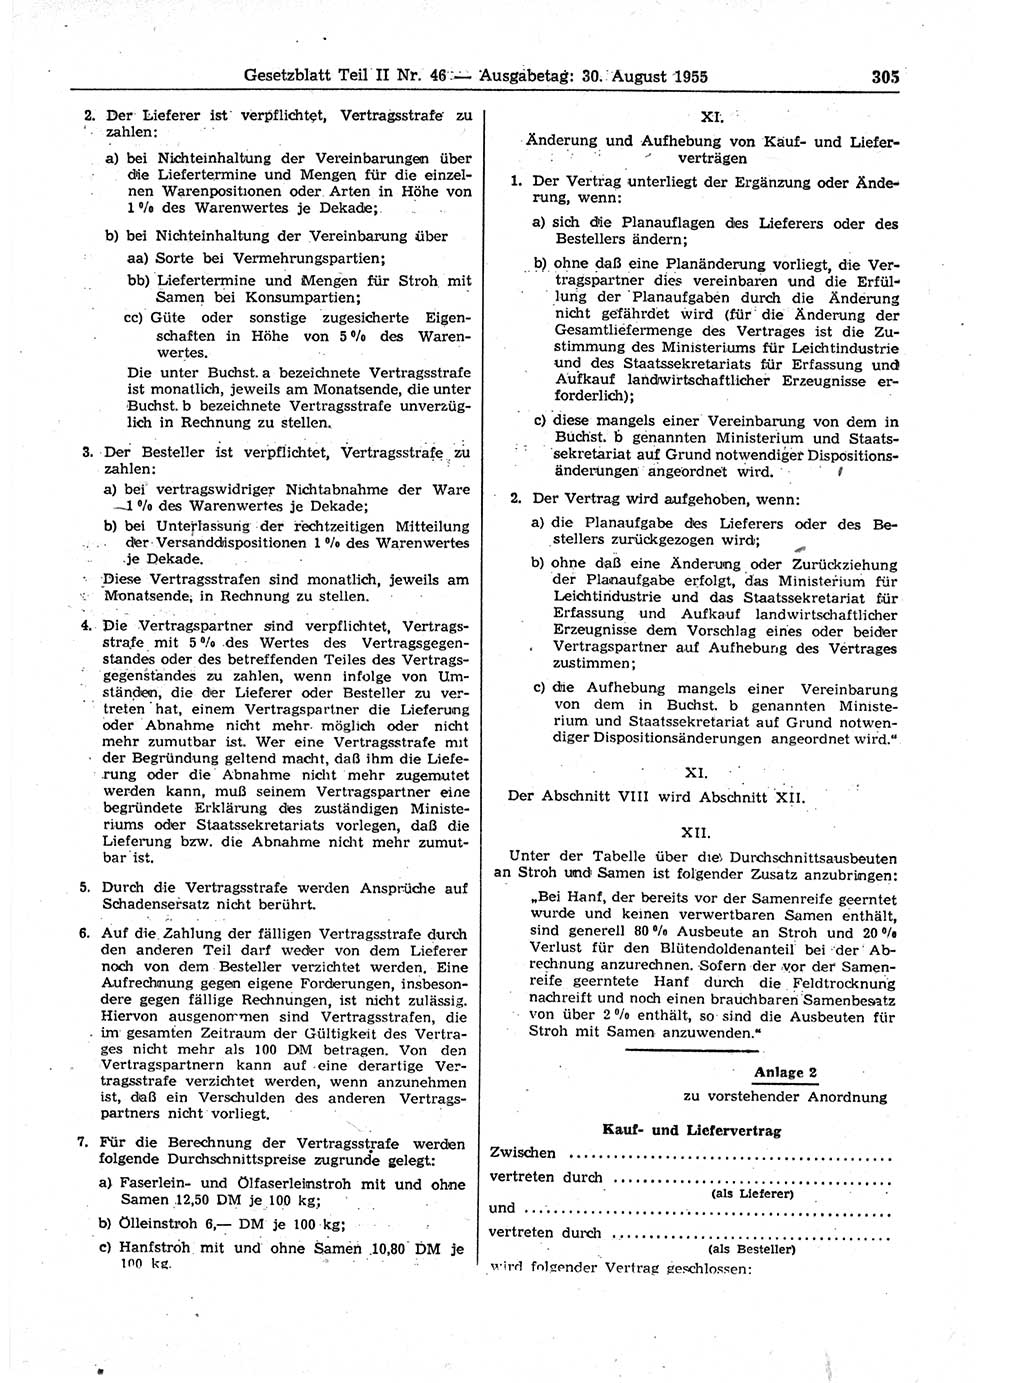 Gesetzblatt (GBl.) der Deutschen Demokratischen Republik (DDR) Teil ⅠⅠ 1955, Seite 305 (GBl. DDR ⅠⅠ 1955, S. 305)